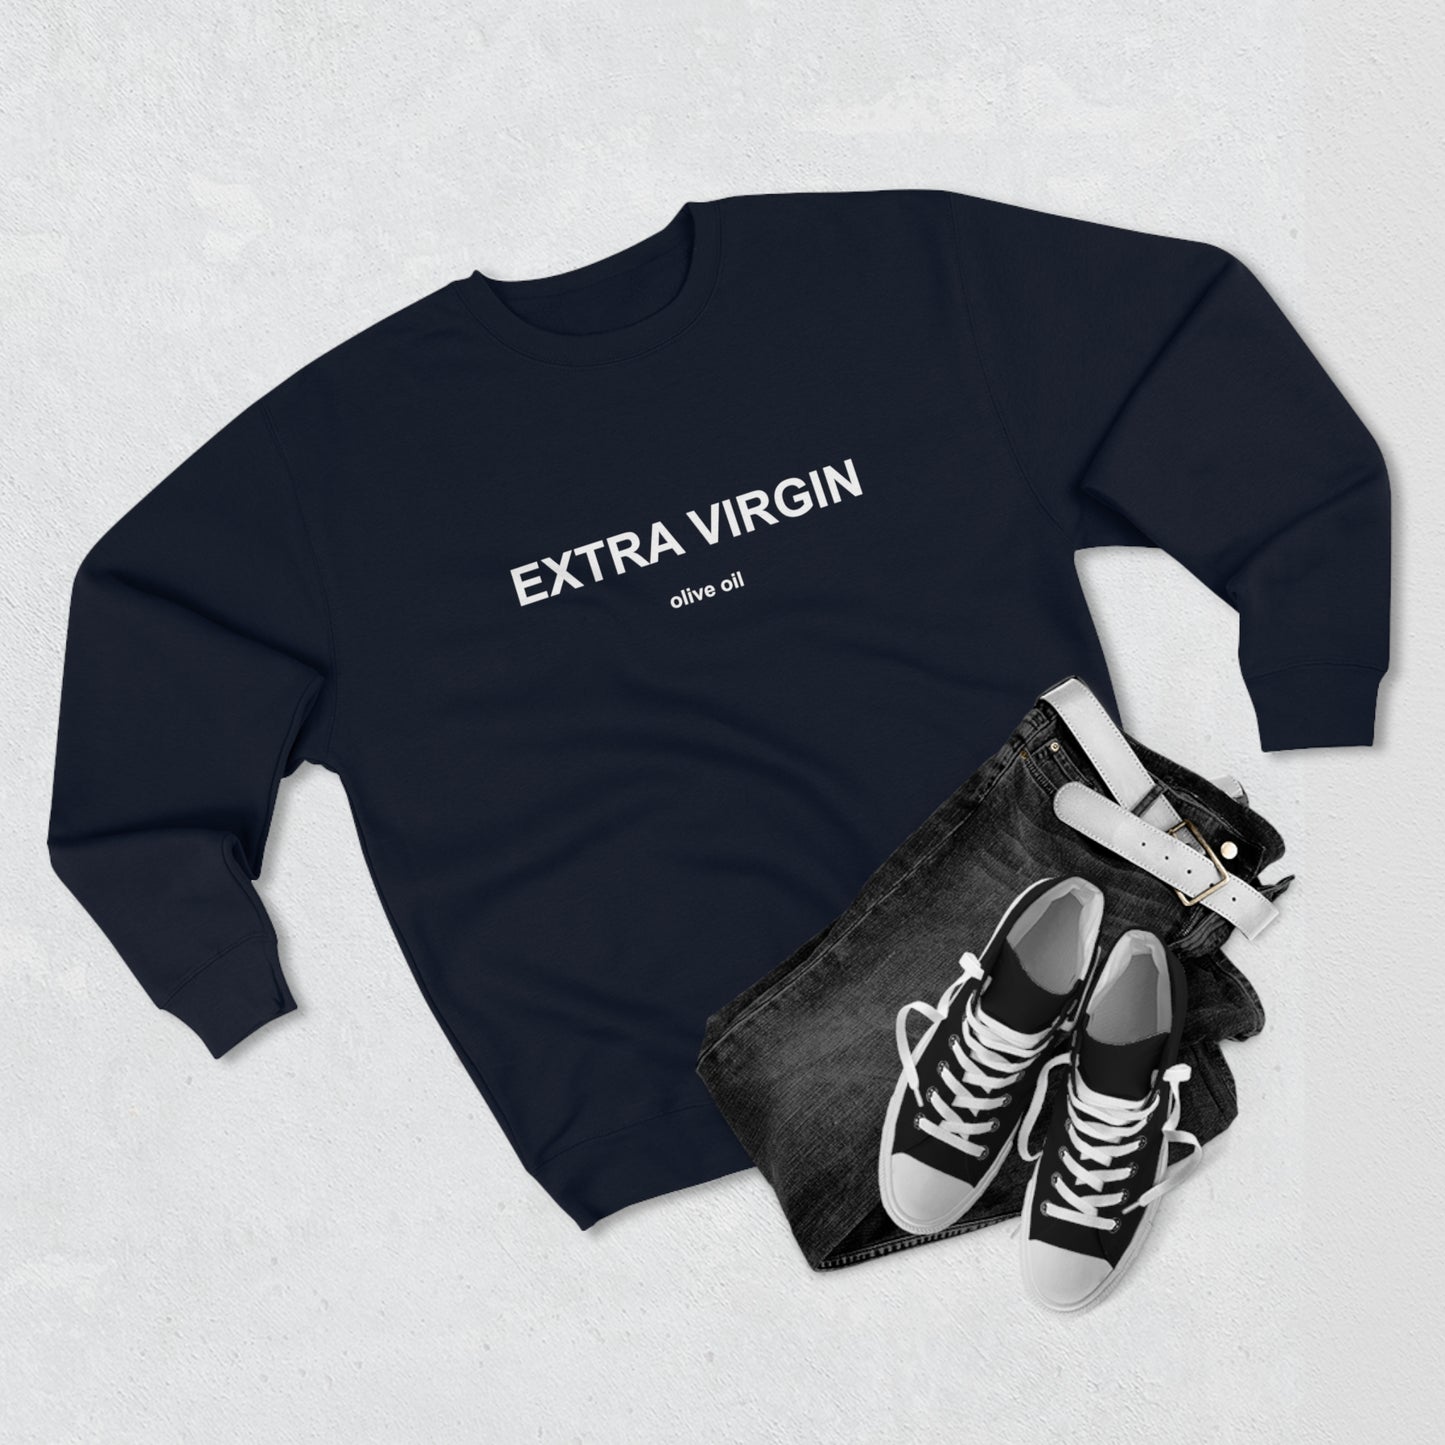 EXTRA VIRGIN olive oil Unisex Premium Crewneck Sweatshirt